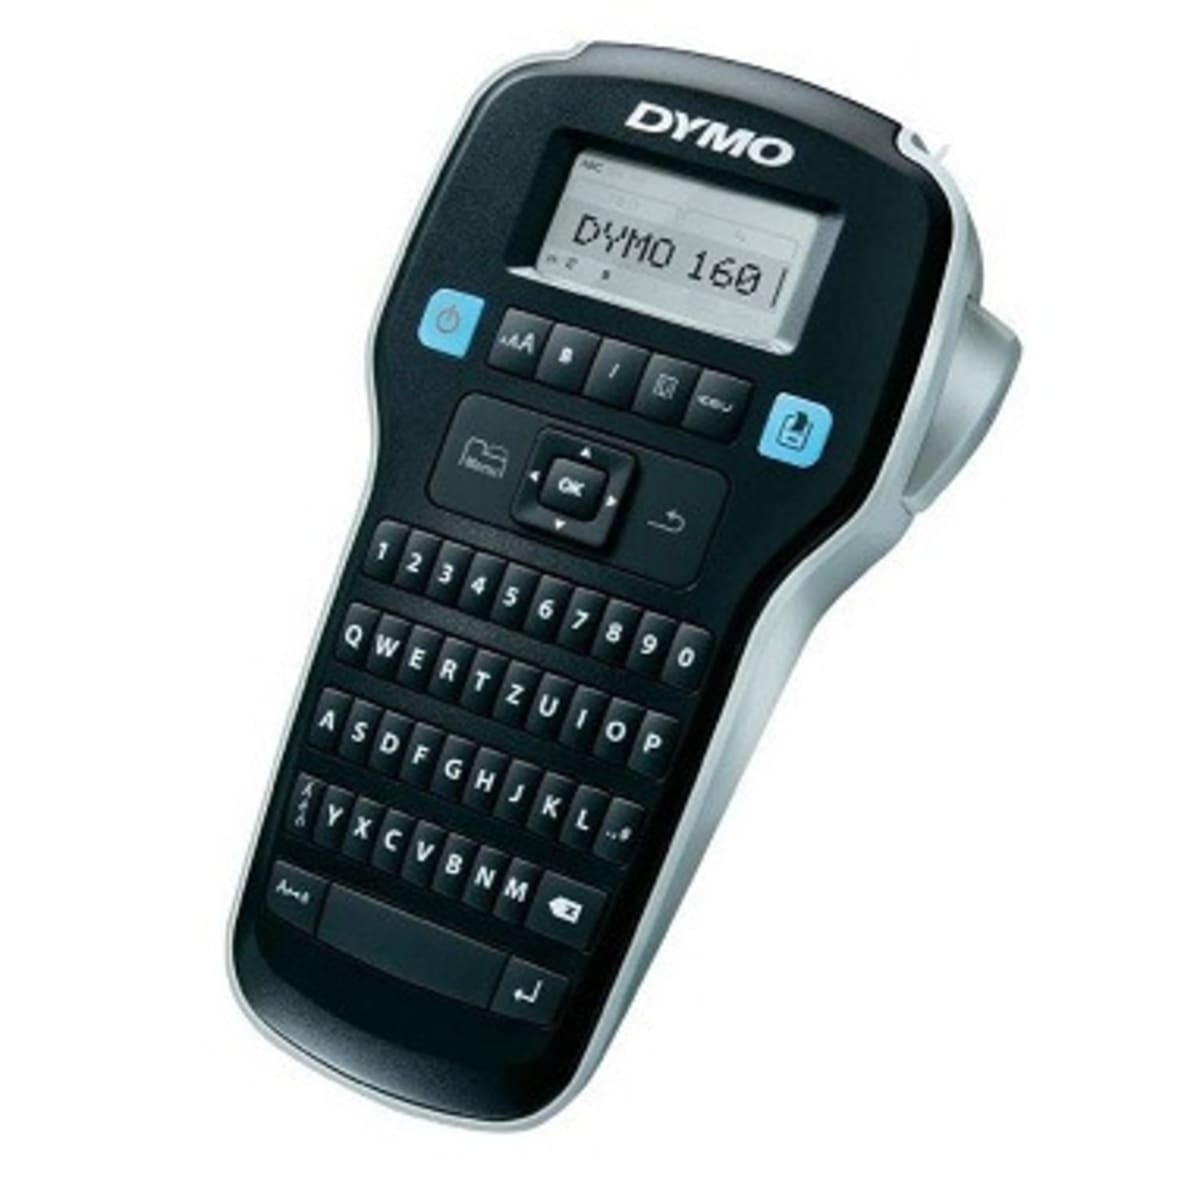 Dymo Label Manager 160 Handheld Label Maker